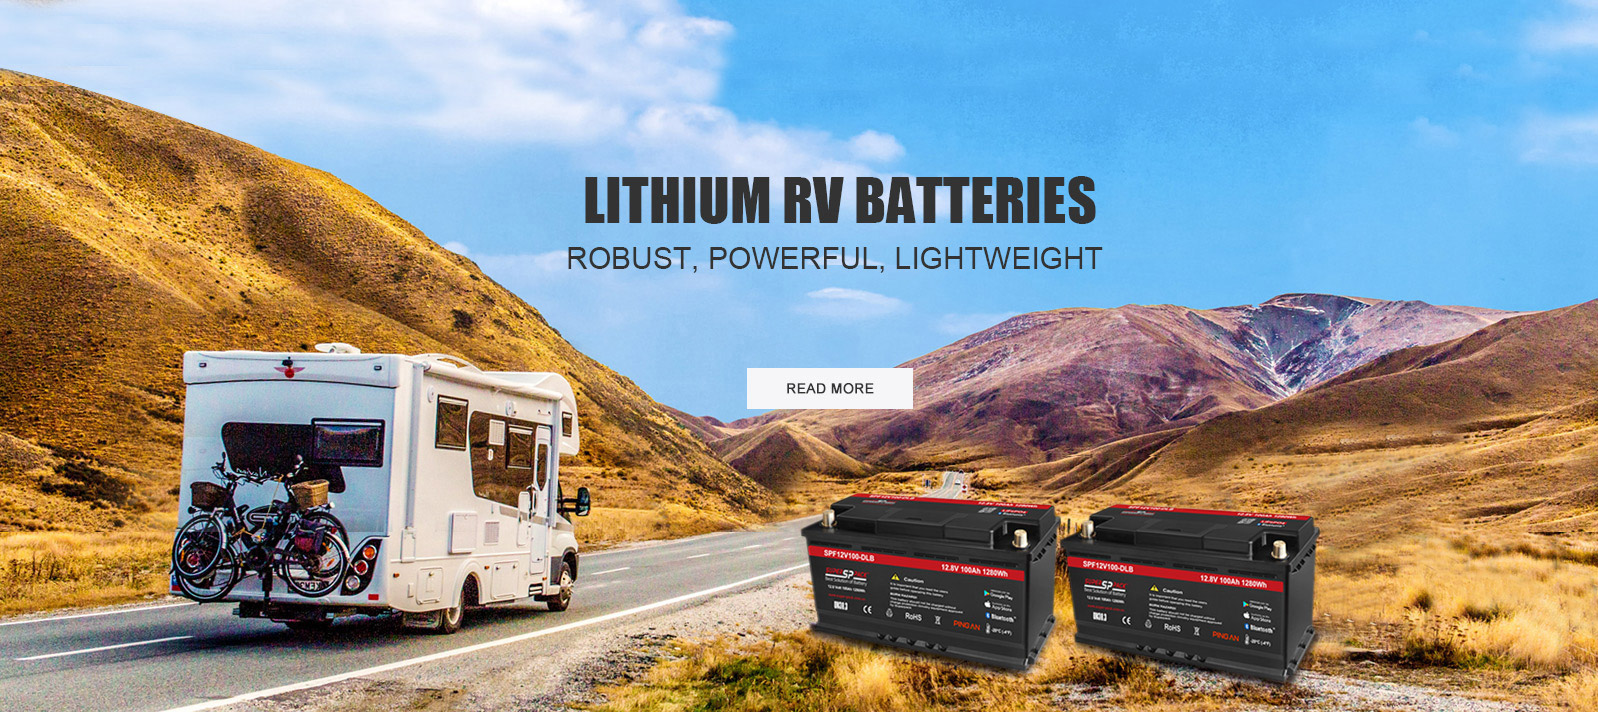 Superpack lithium RV batteries